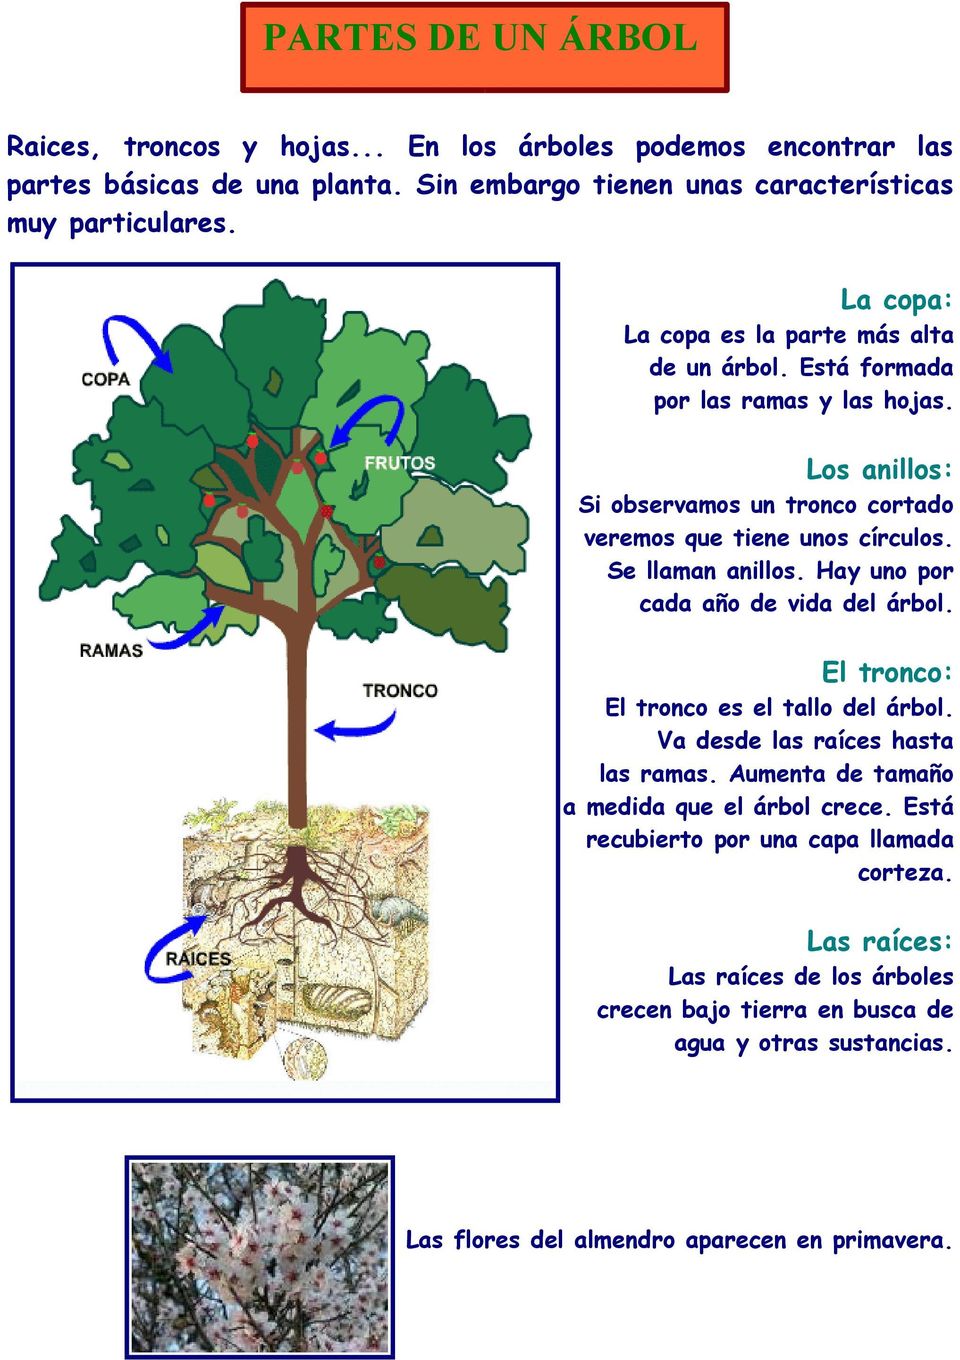 Se llaman anillos. Hay uno por cada año de vida del árbol. El tronco: El tronco es el tallo del árbol. Va desde las raíces hasta las ramas.